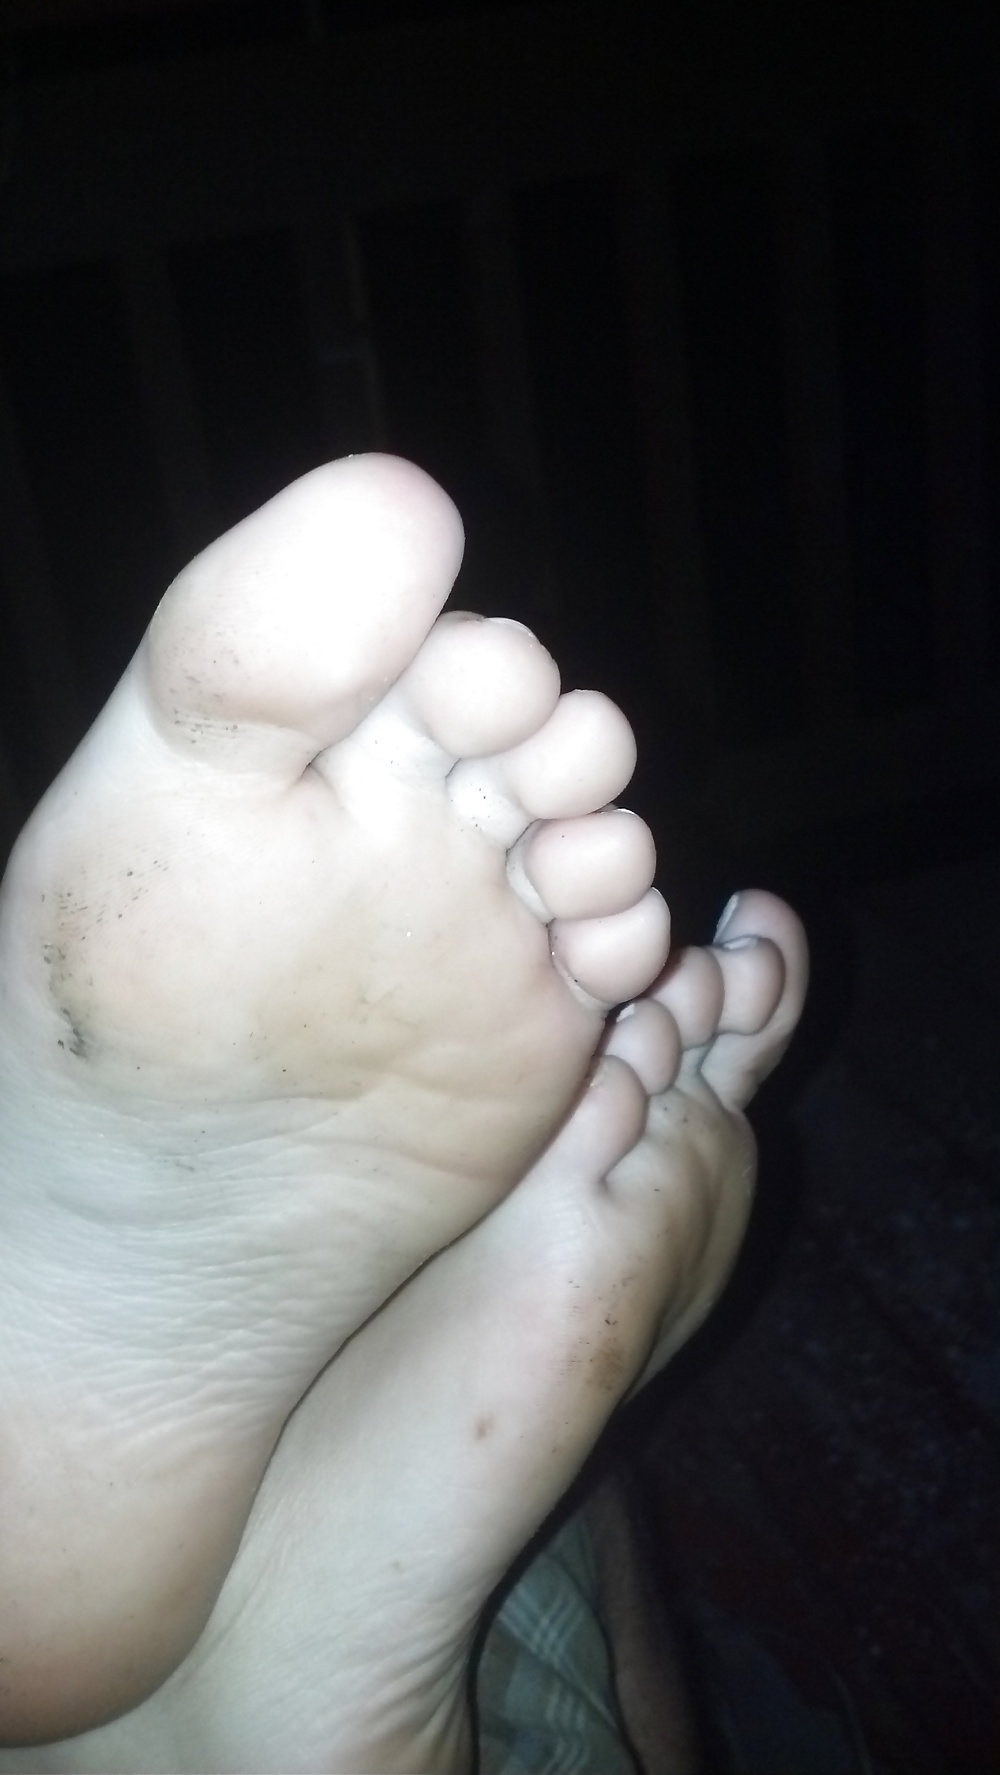 cum in me feet (hot wife) pict gal